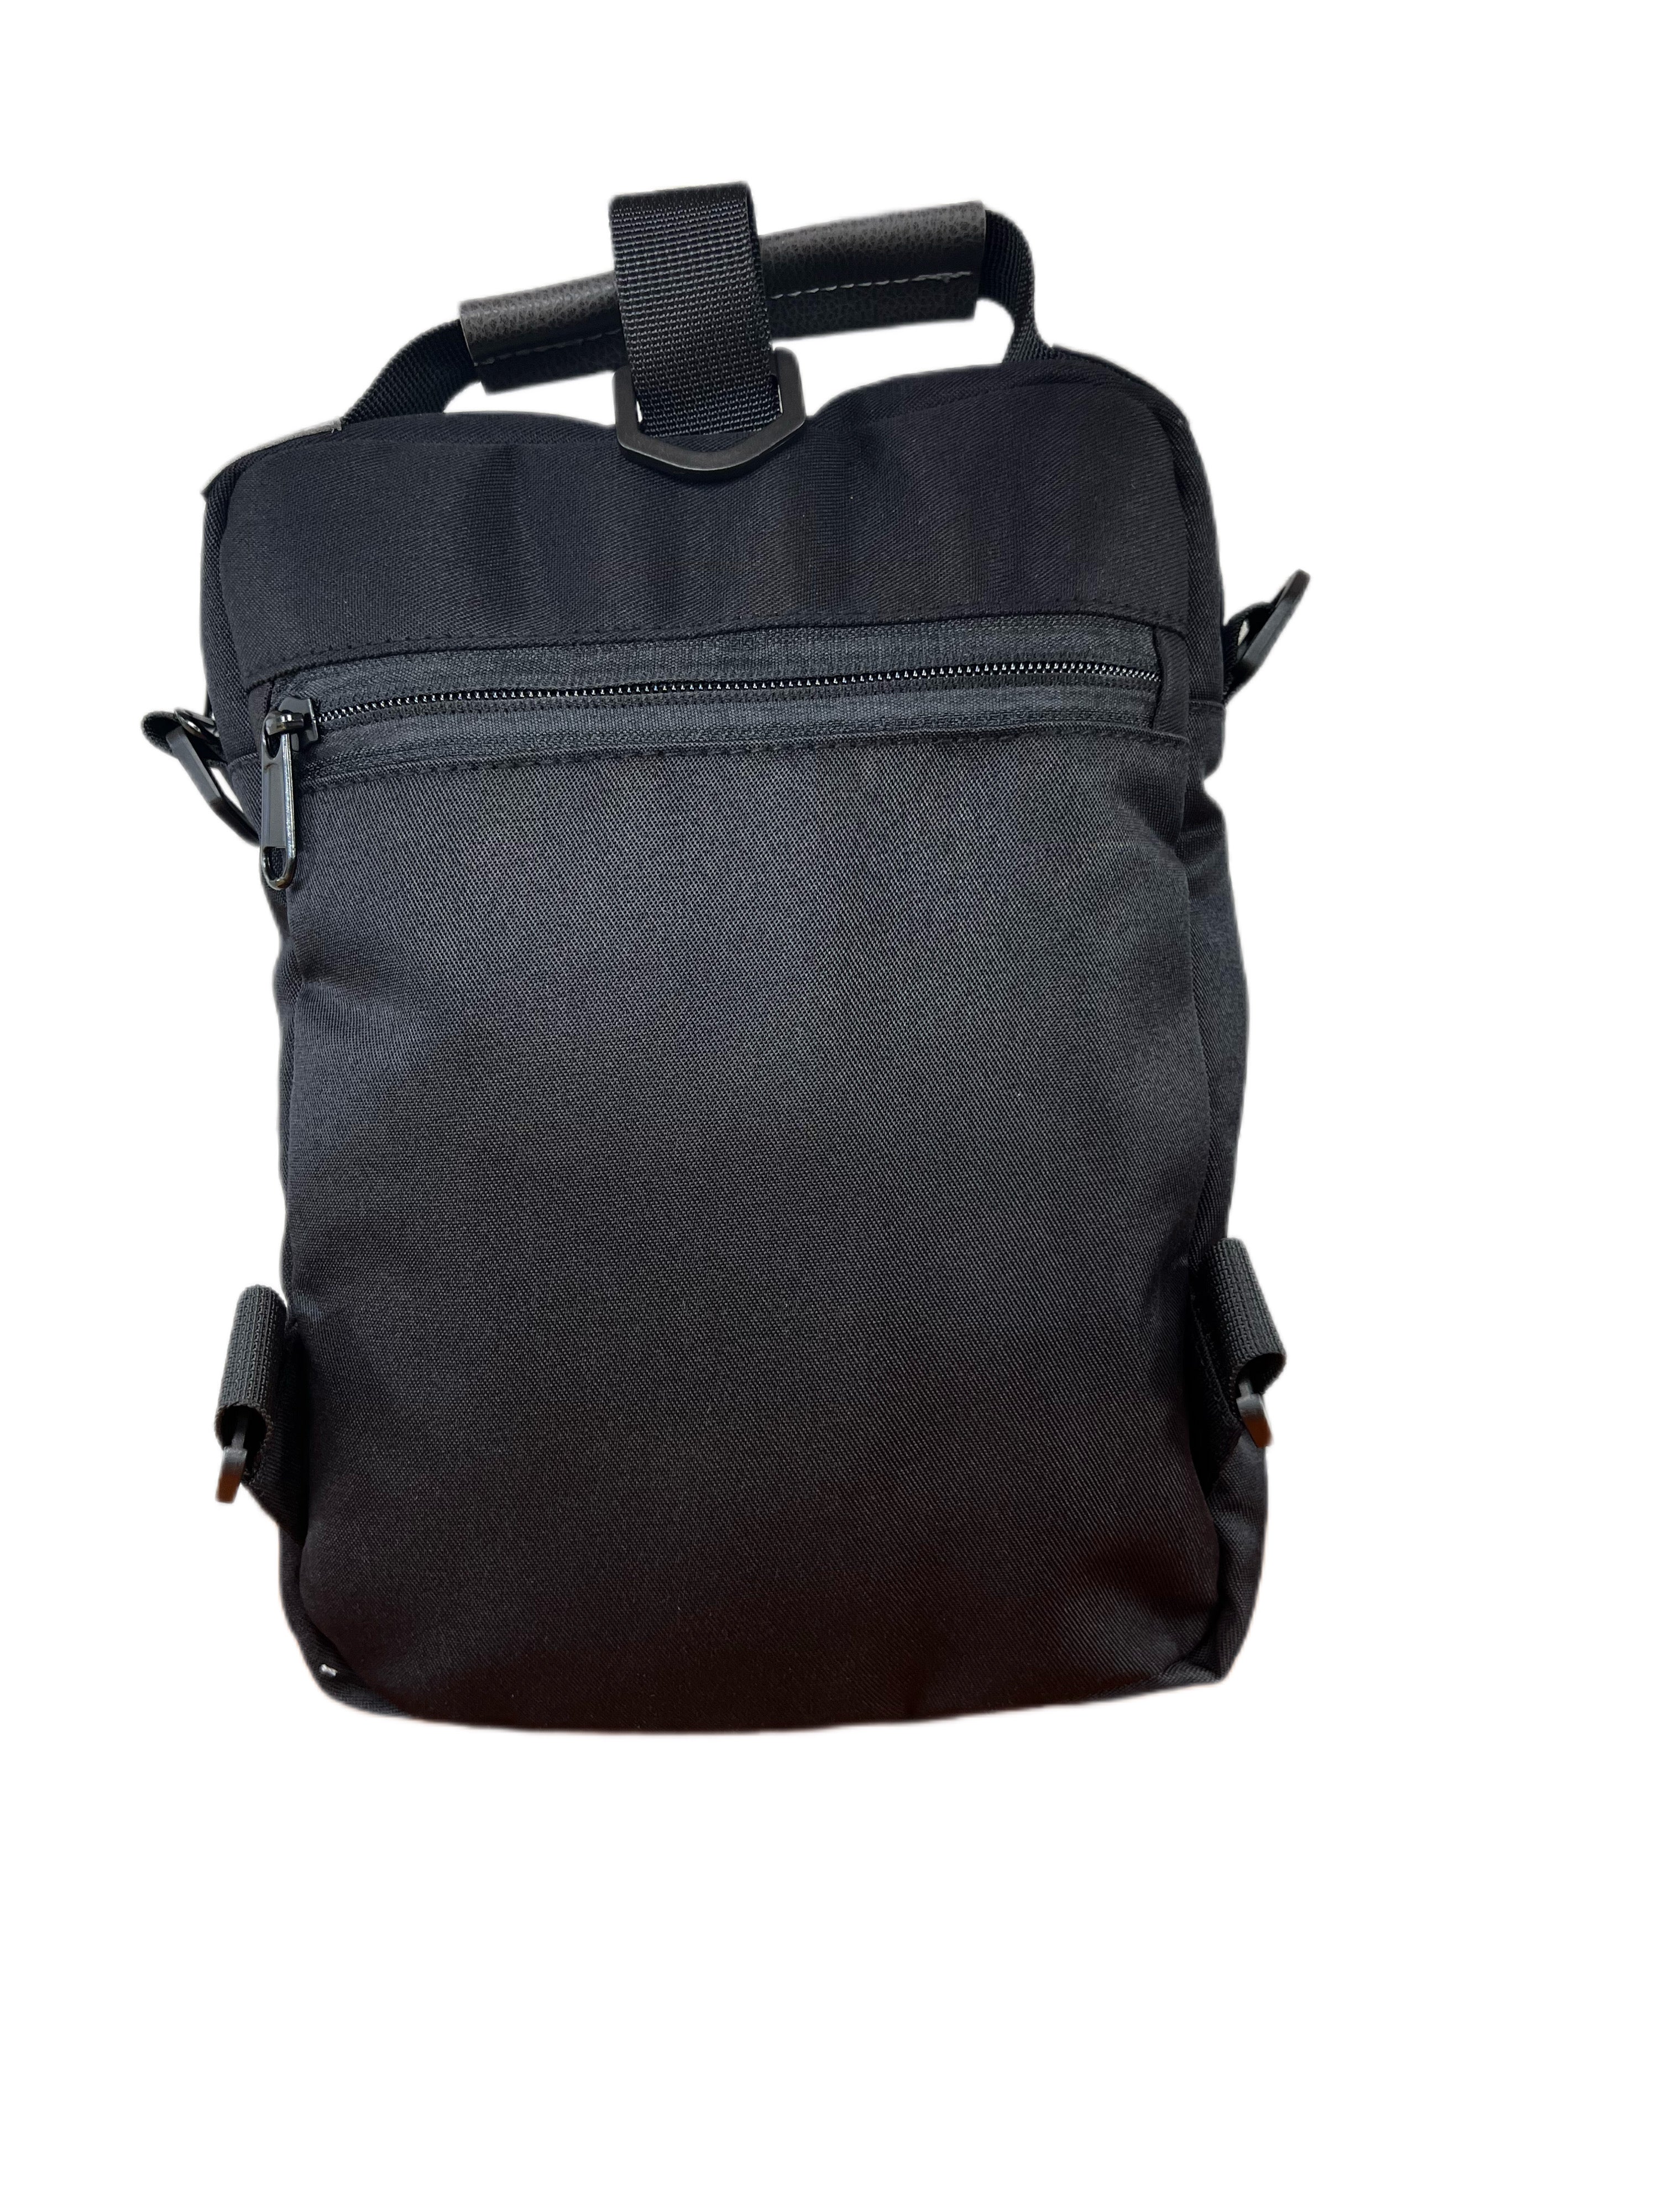 Tablet bag with shoulder strap -10 inch (Green/black)